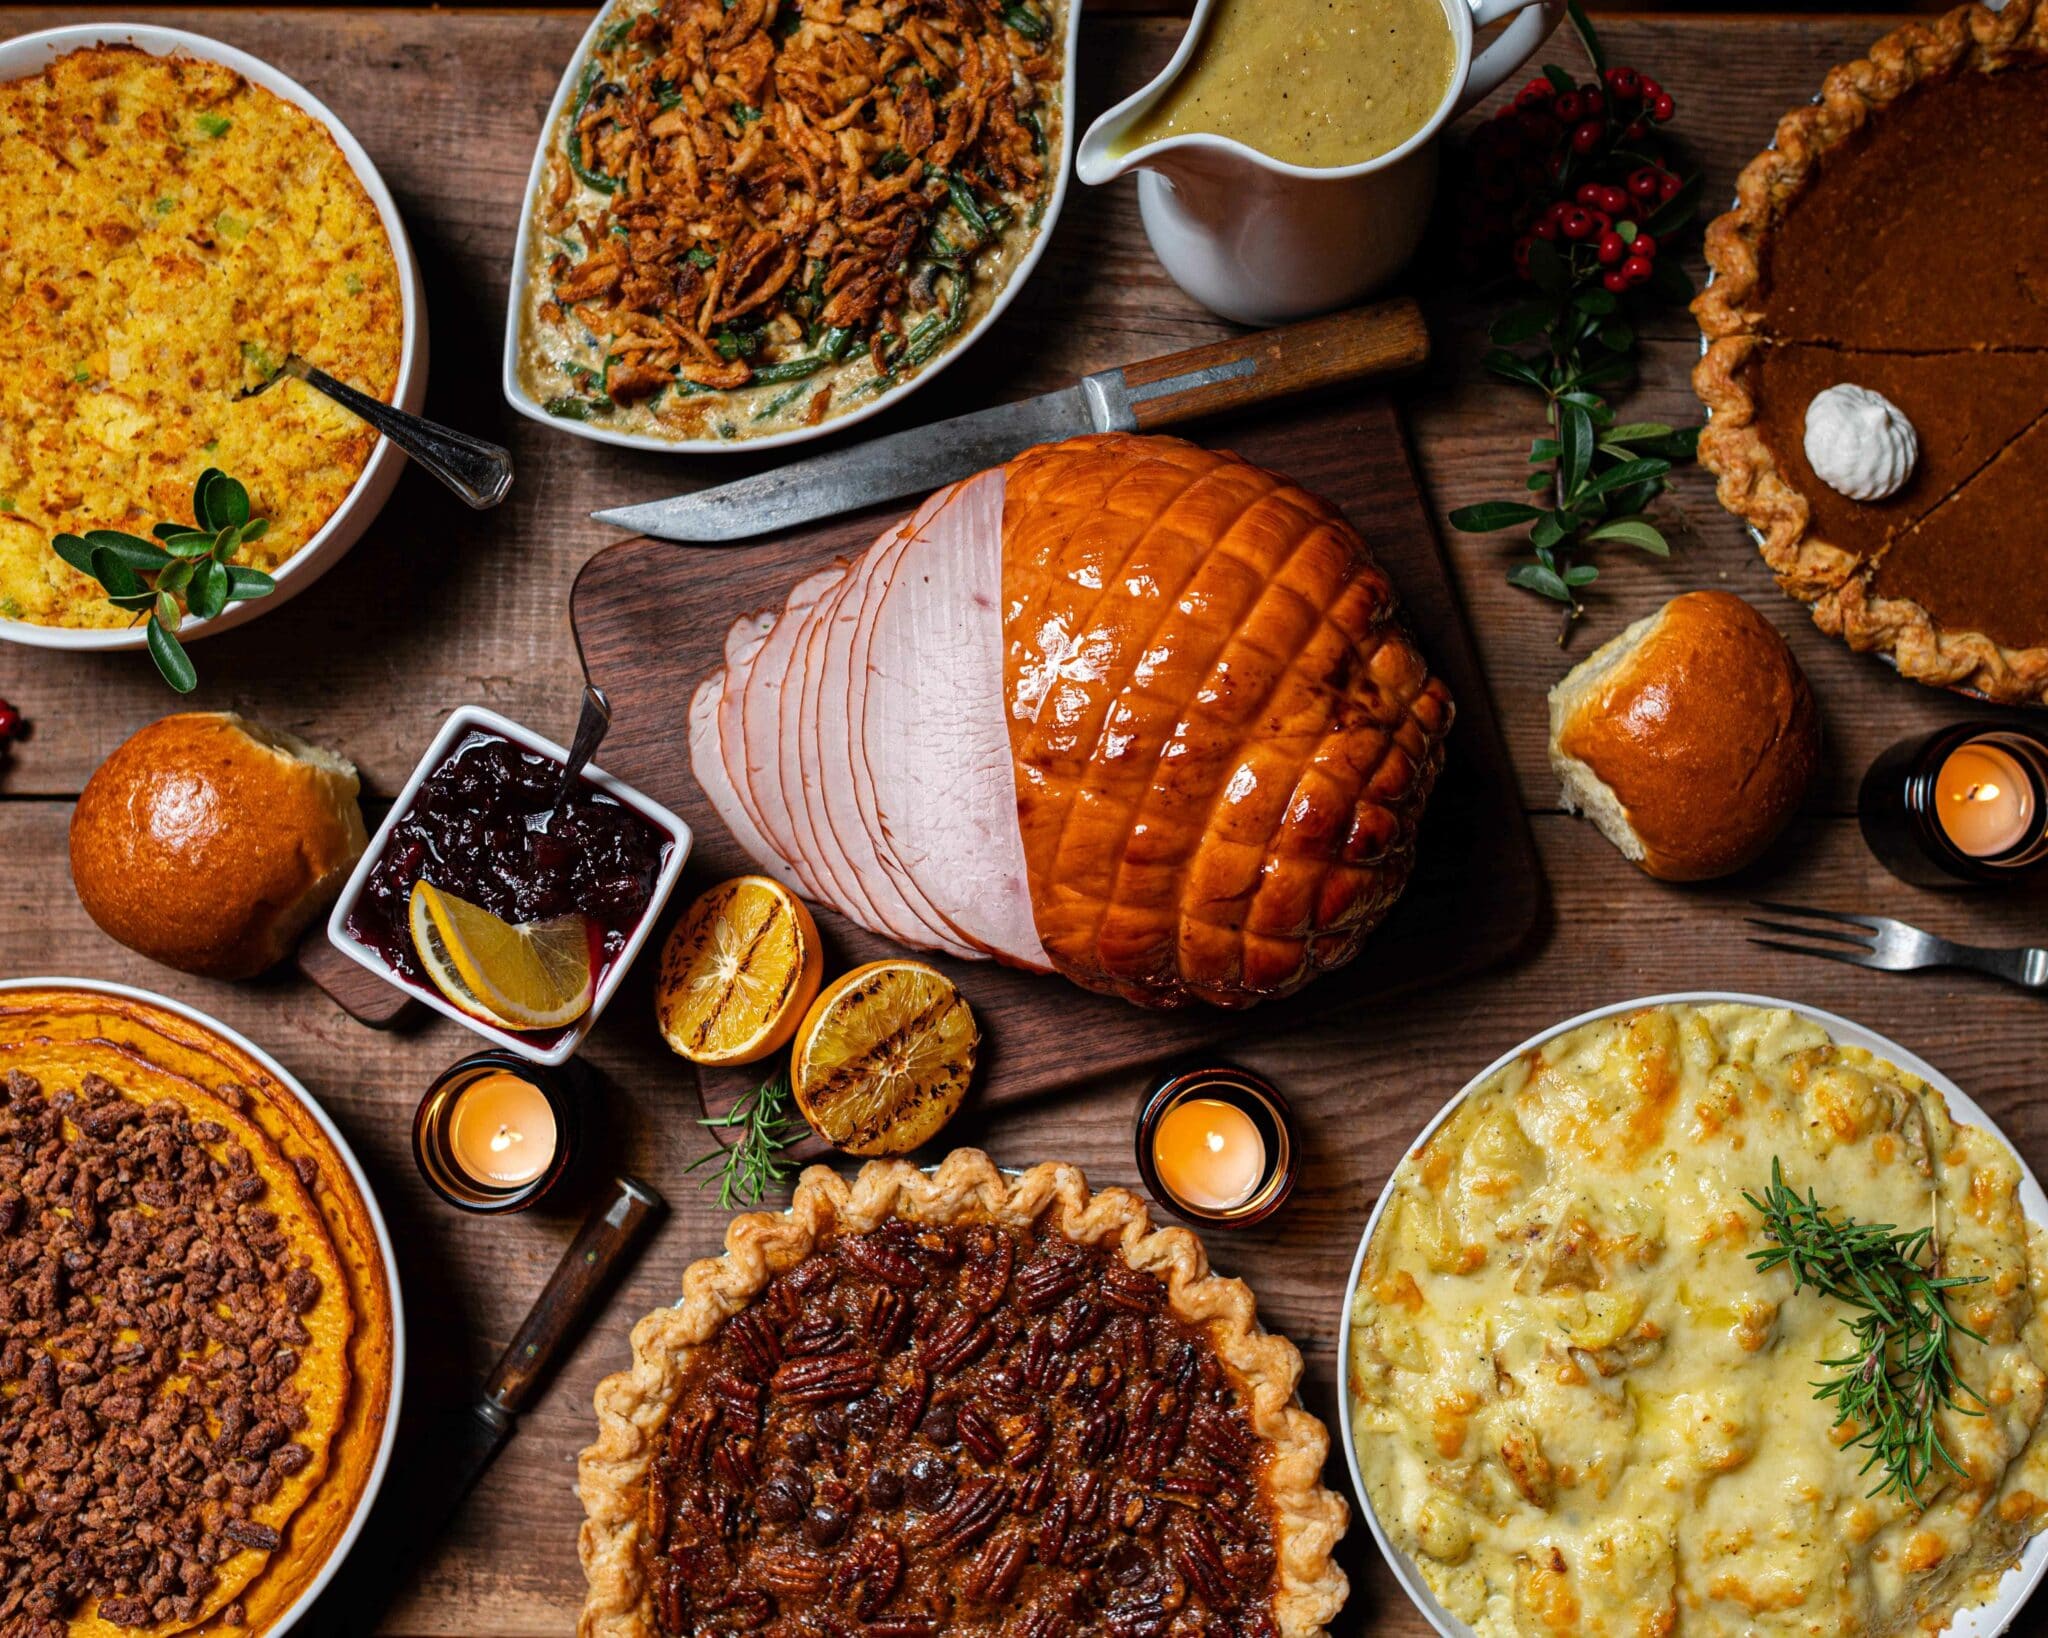 Dia Mundial de Ação de Graças – Thanksgiving Day